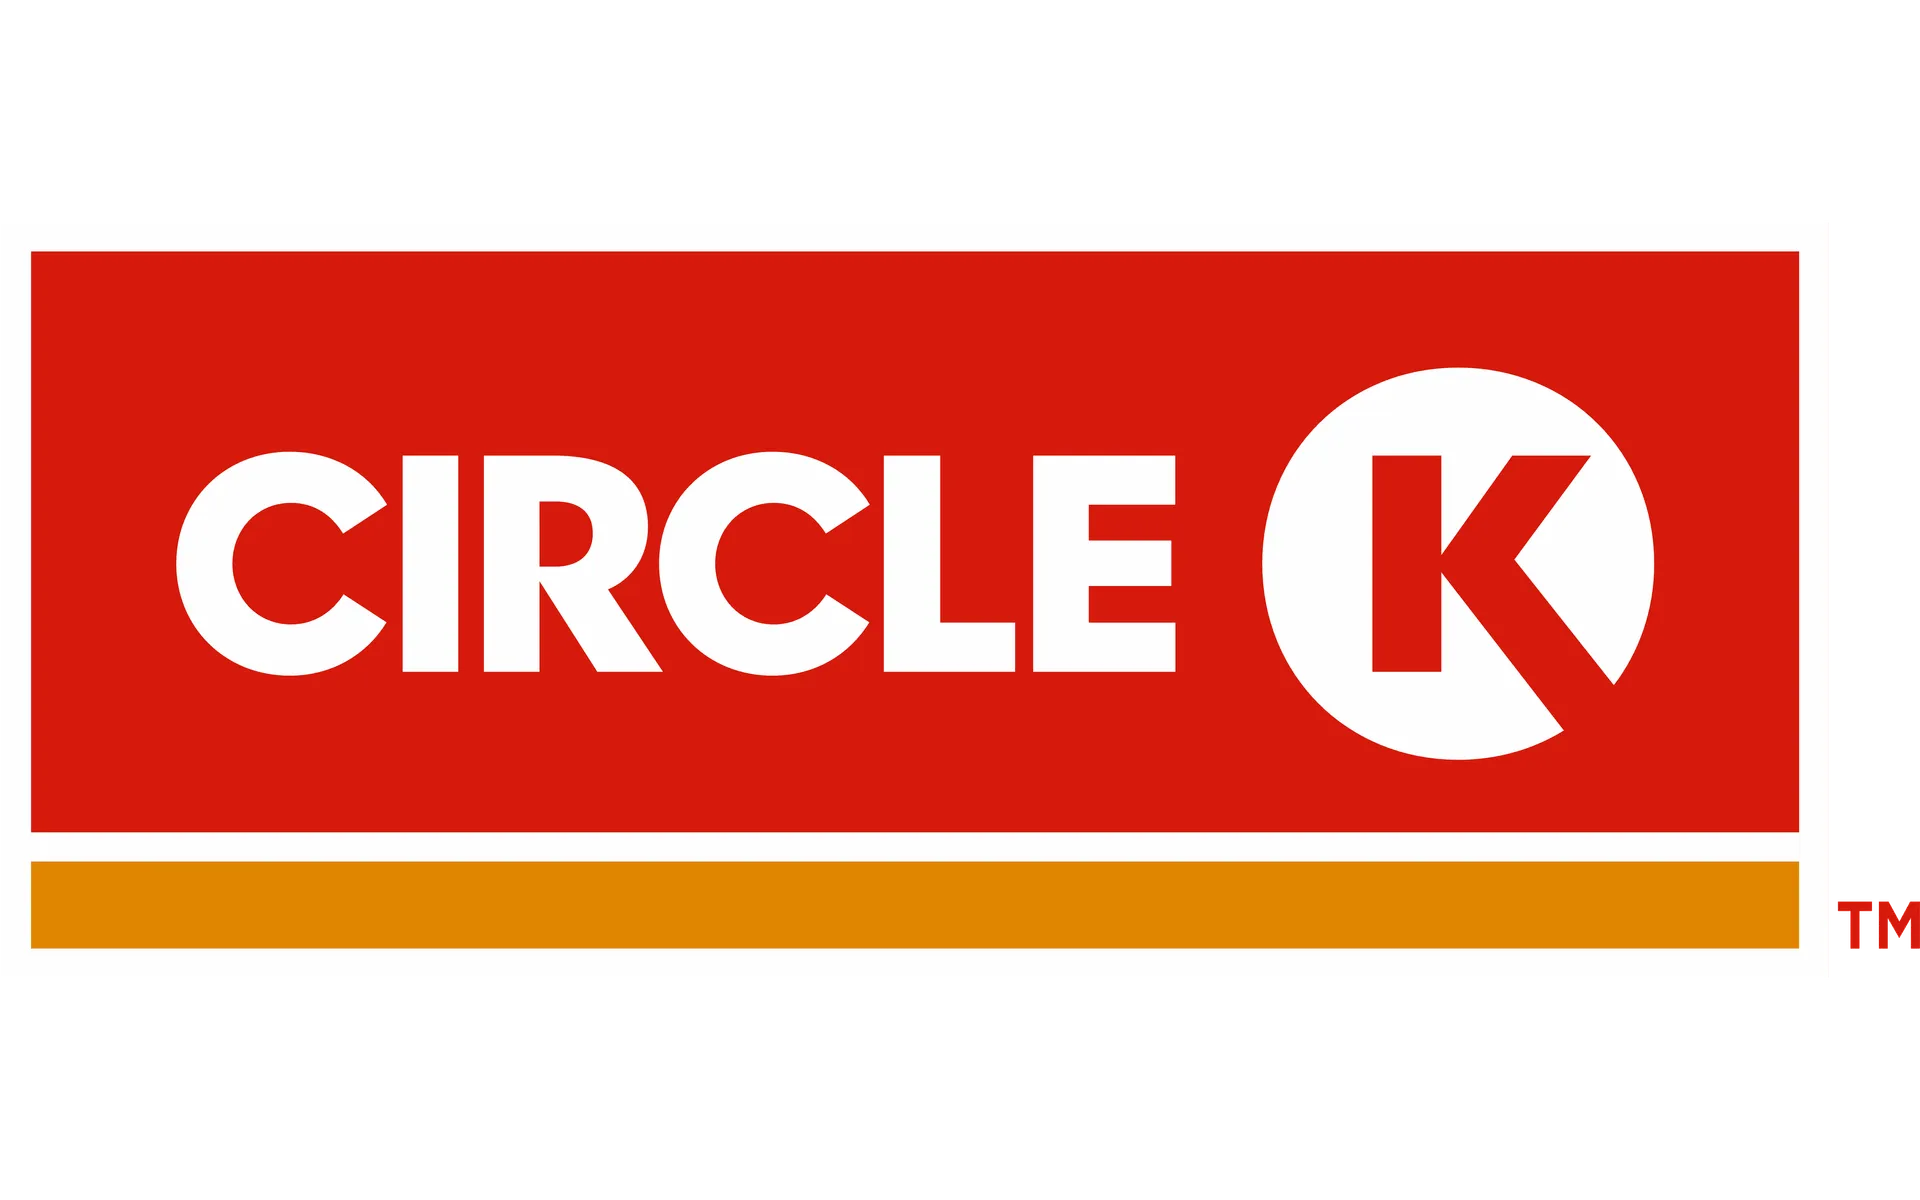 CIRCLE K logo